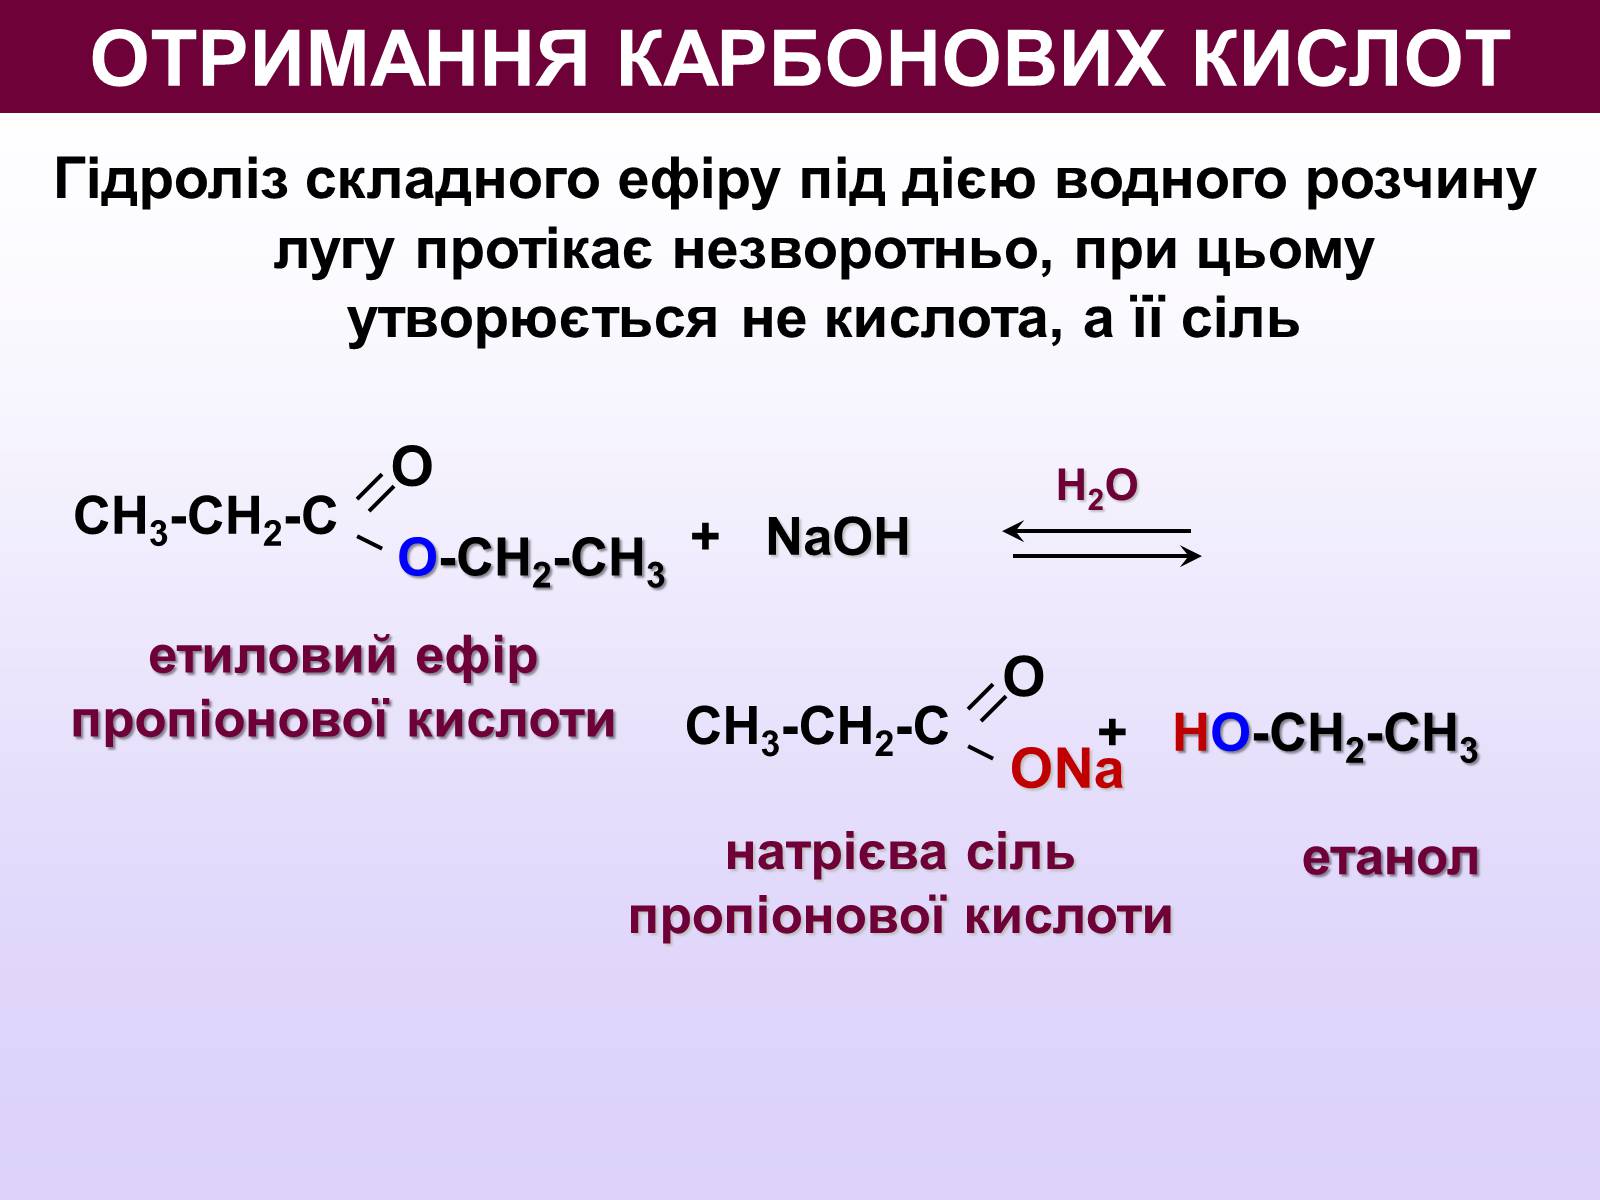 Уравнения получения карбоновых кислот. Способы получения карбоновых кислот. Методы синтеза карбоновых кислот. Способы получения карбоновых кислот реакции. Щелочной гидролиз сложных эфиров.